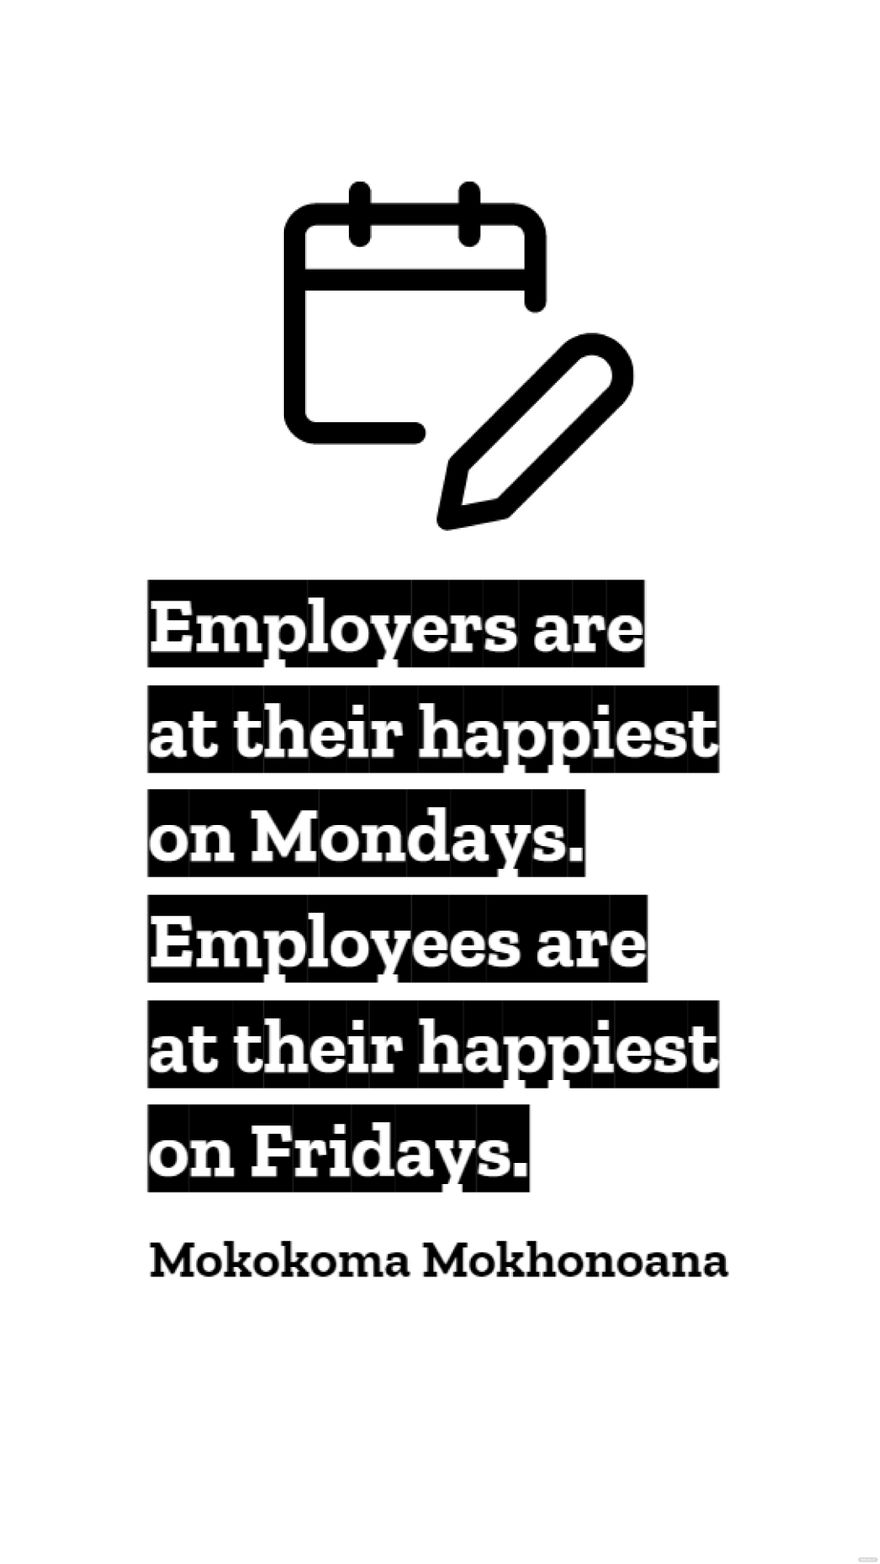 Mokokoma Mokhonoana - Employers are at their happiest on Mondays. Employees are at their happiest on Fridays.